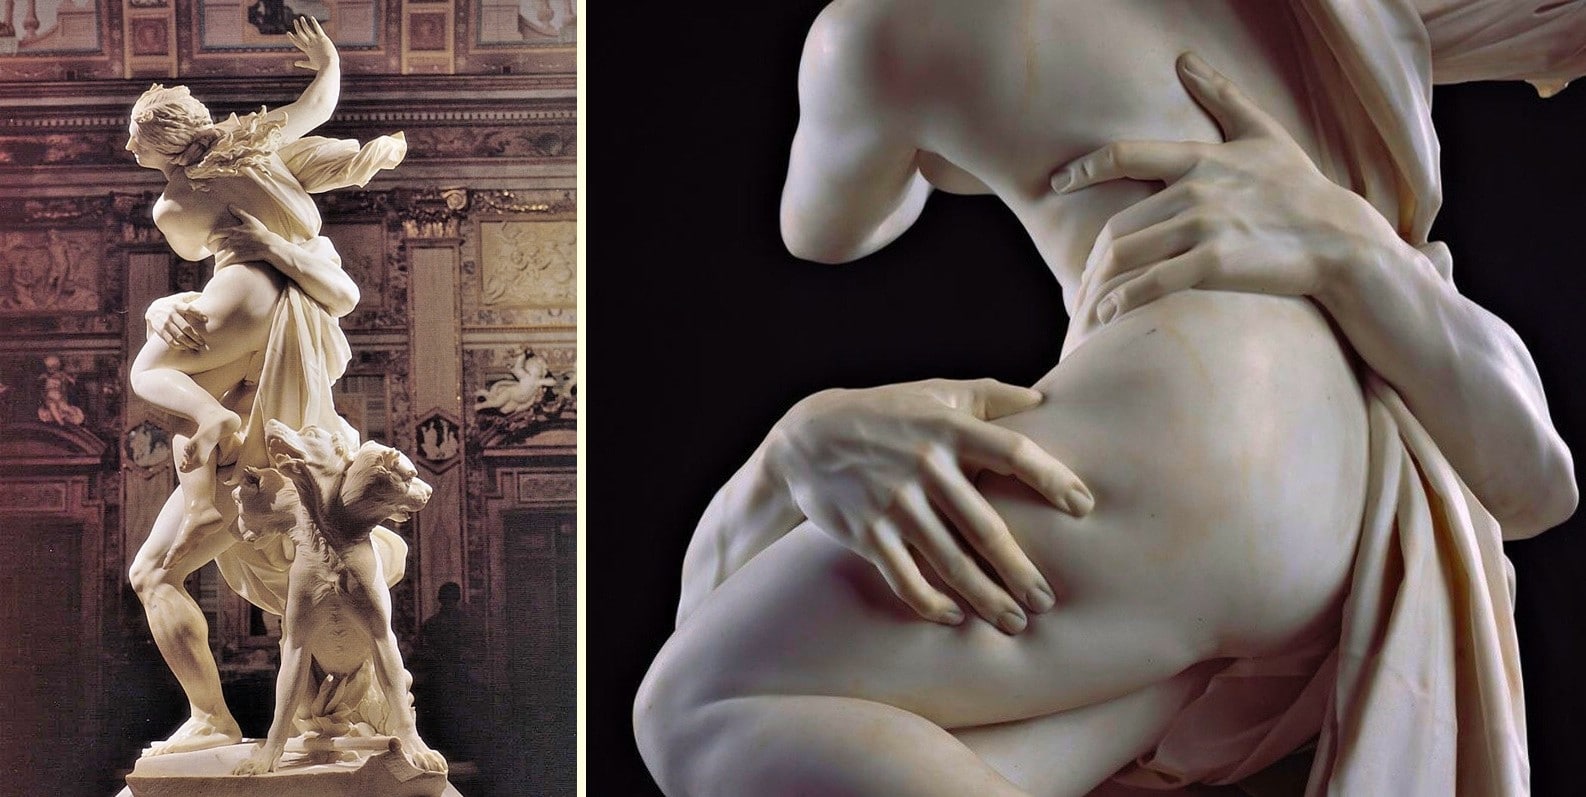 Persephone'nin Kaçırılışı - Borghese Galerisi Rehberi- Müze Biletleri